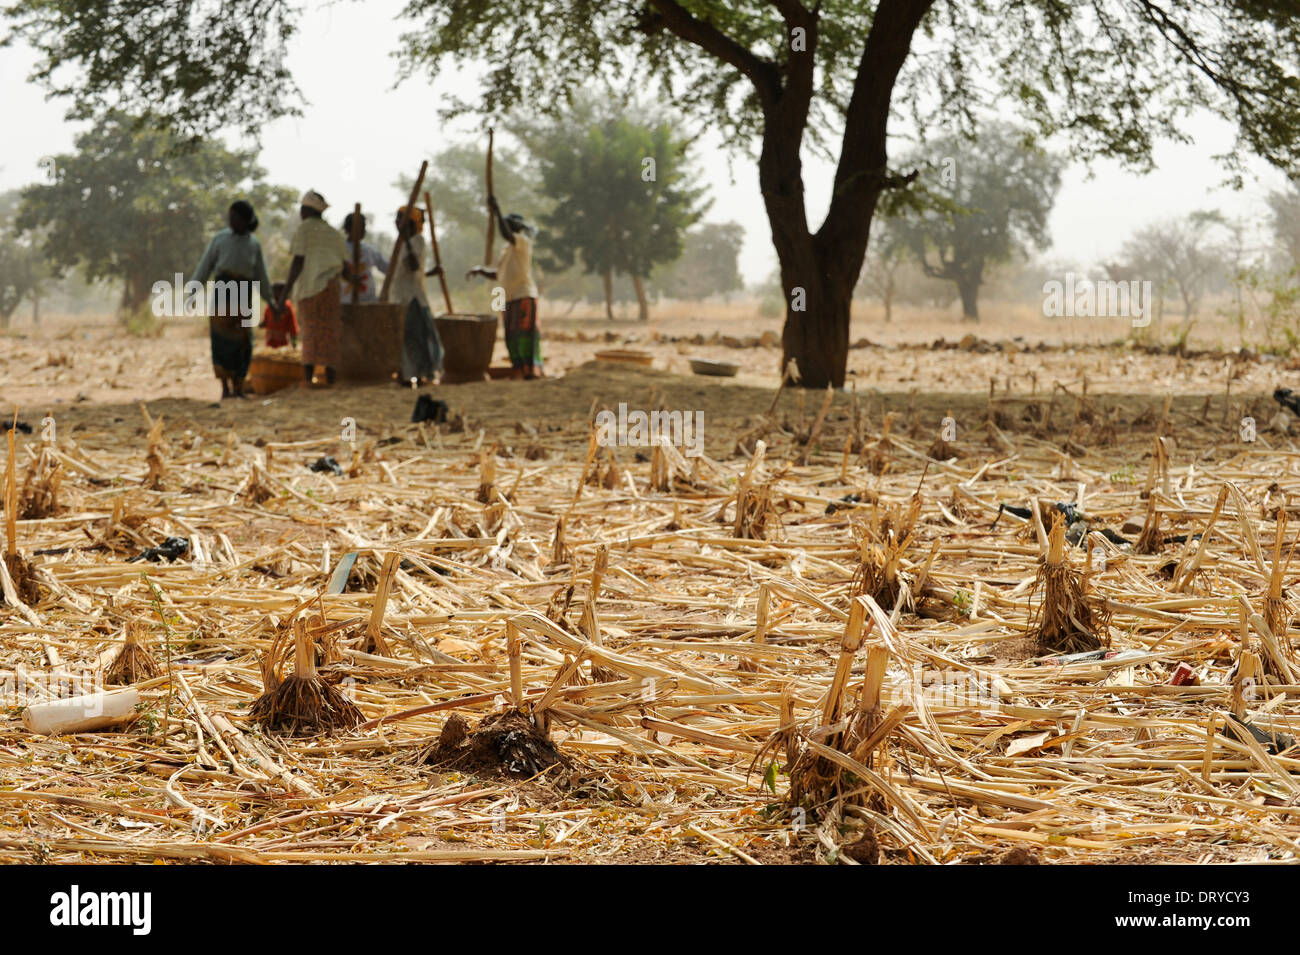 BURKINA FASO Kaya Korsimoro village, les femmes, livre de millet, de la région du Sahel est régulièrement touchée par la sécheresse et la faim Banque D'Images